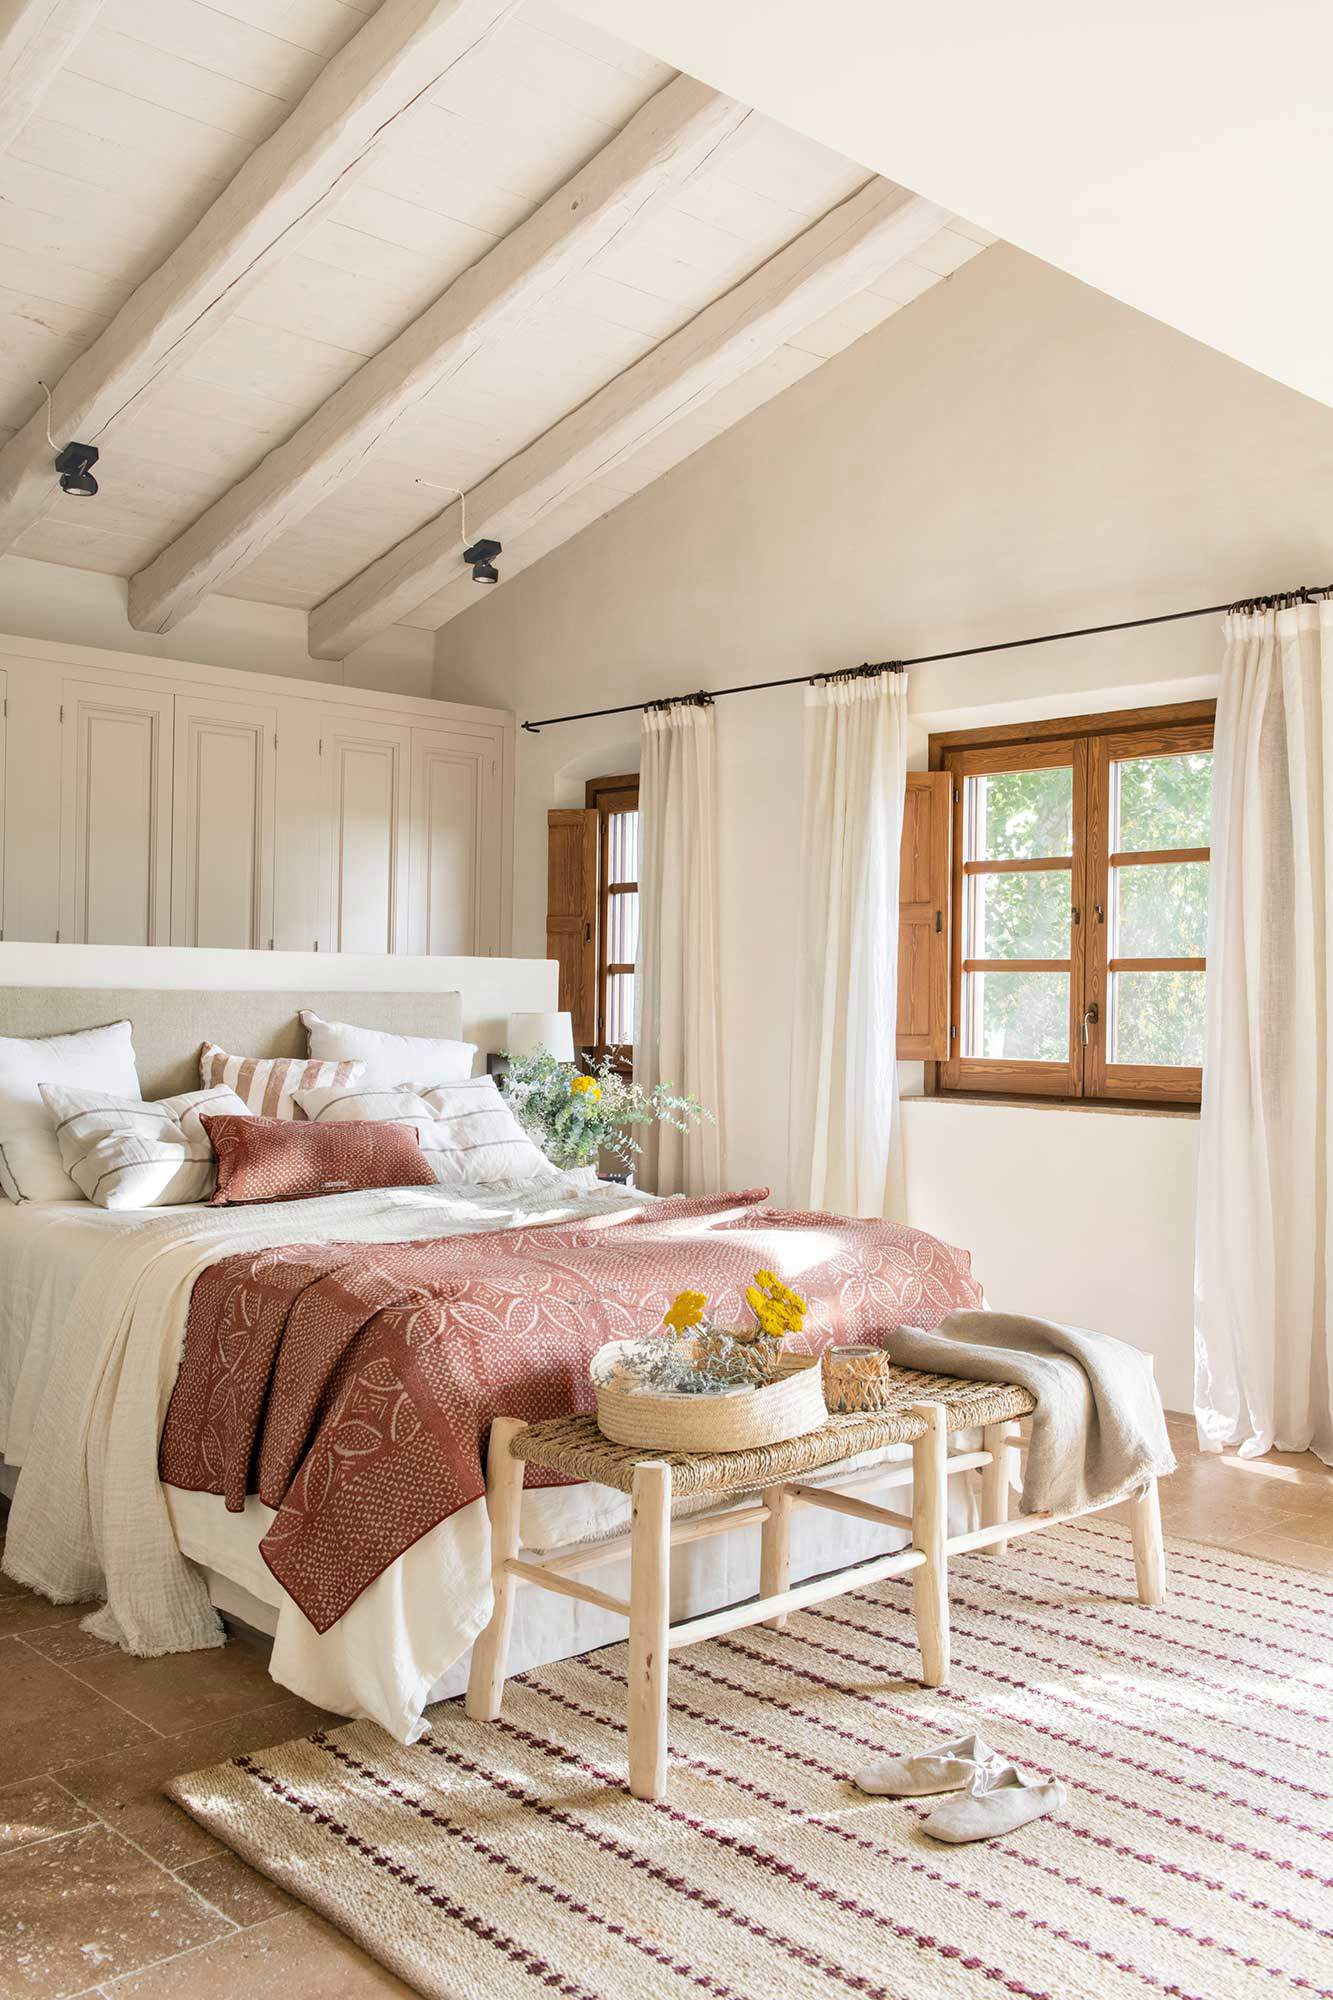 Dormitorio pequeño abuhardillado con ventanas de madera, banco a los pies y alfombra.